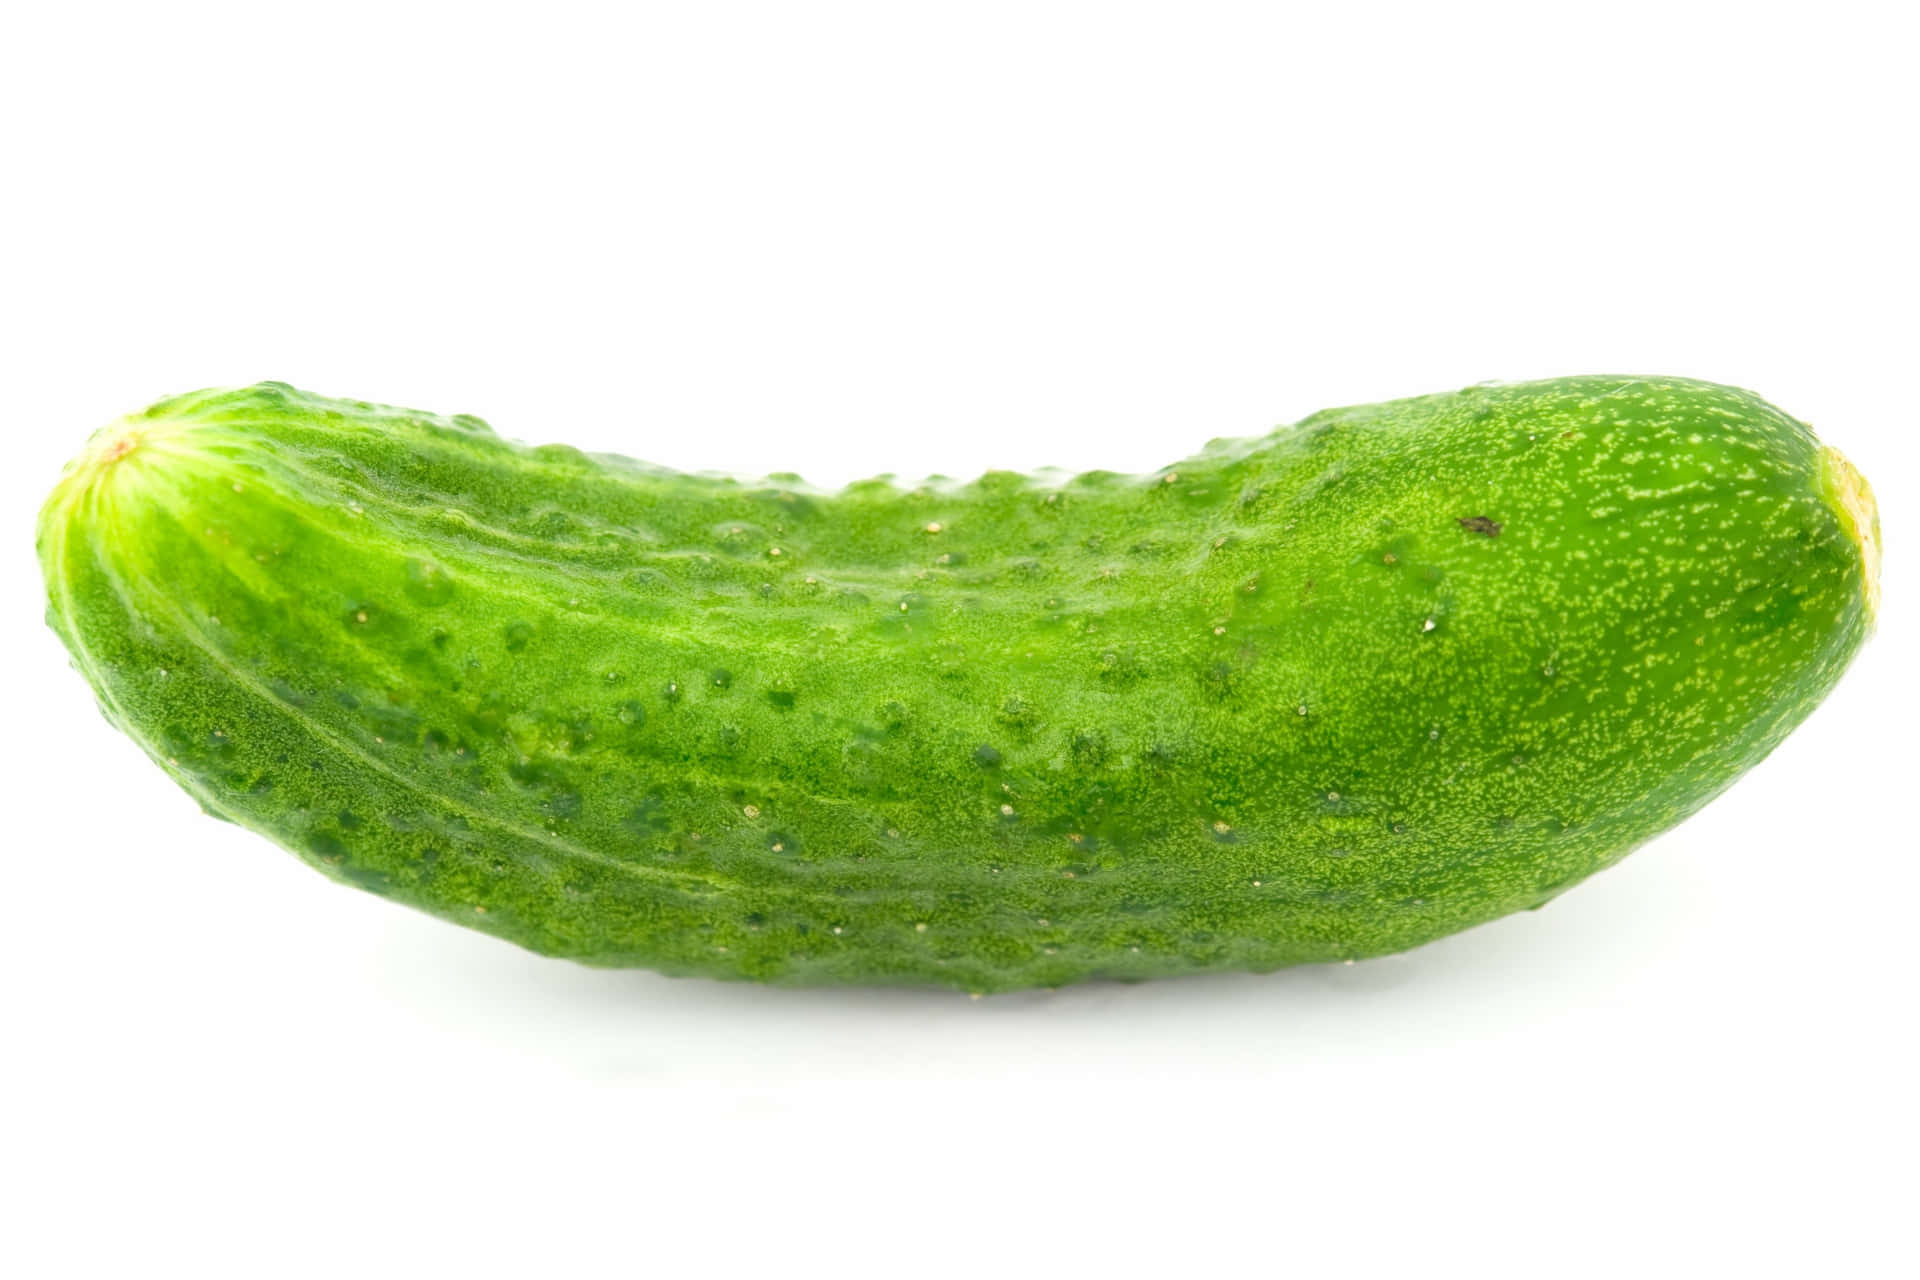 Close up of a Cucumber